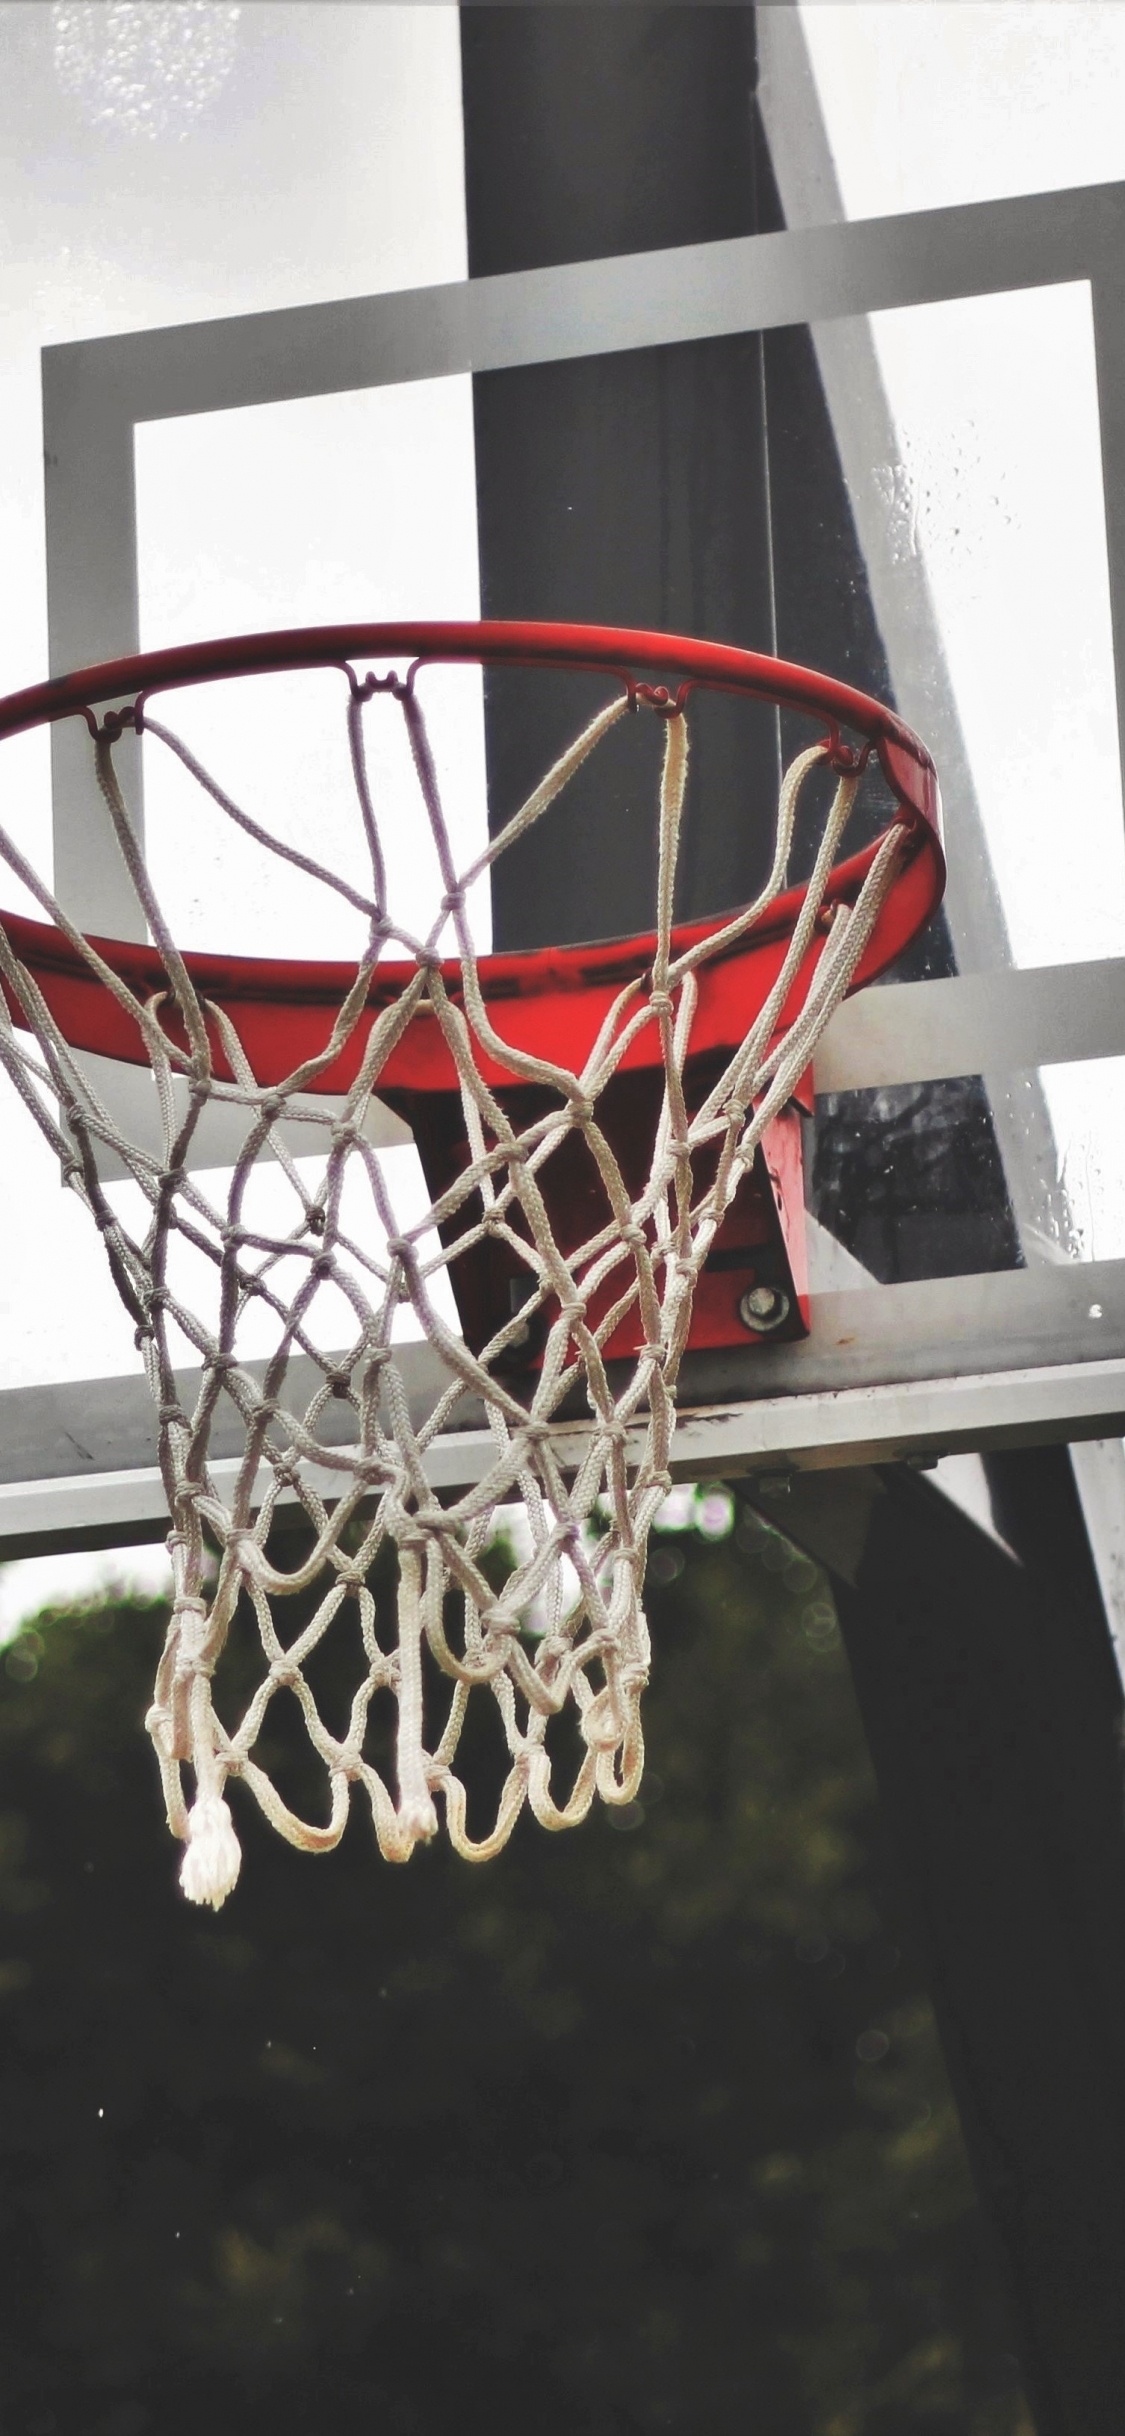 篮球, 篮板, 篮球场, 团队运动, 街头 壁纸 1125x2436 允许